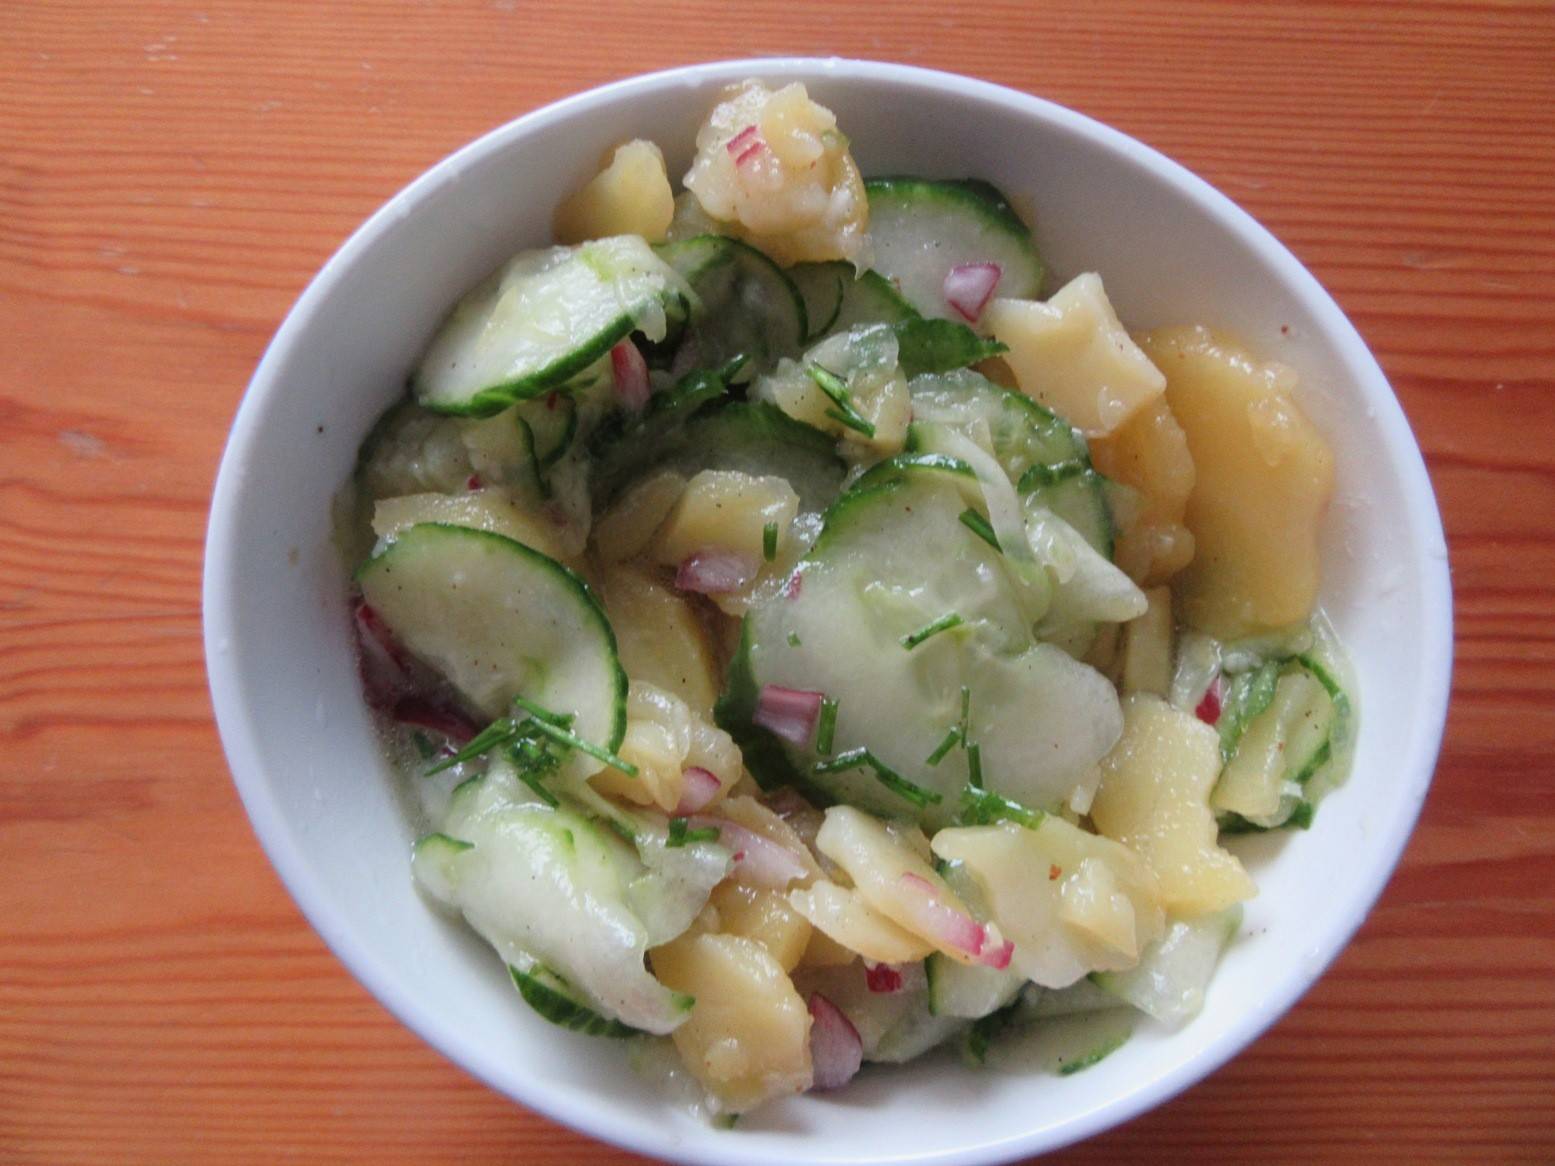 Erdapfel-Gurken-Salat